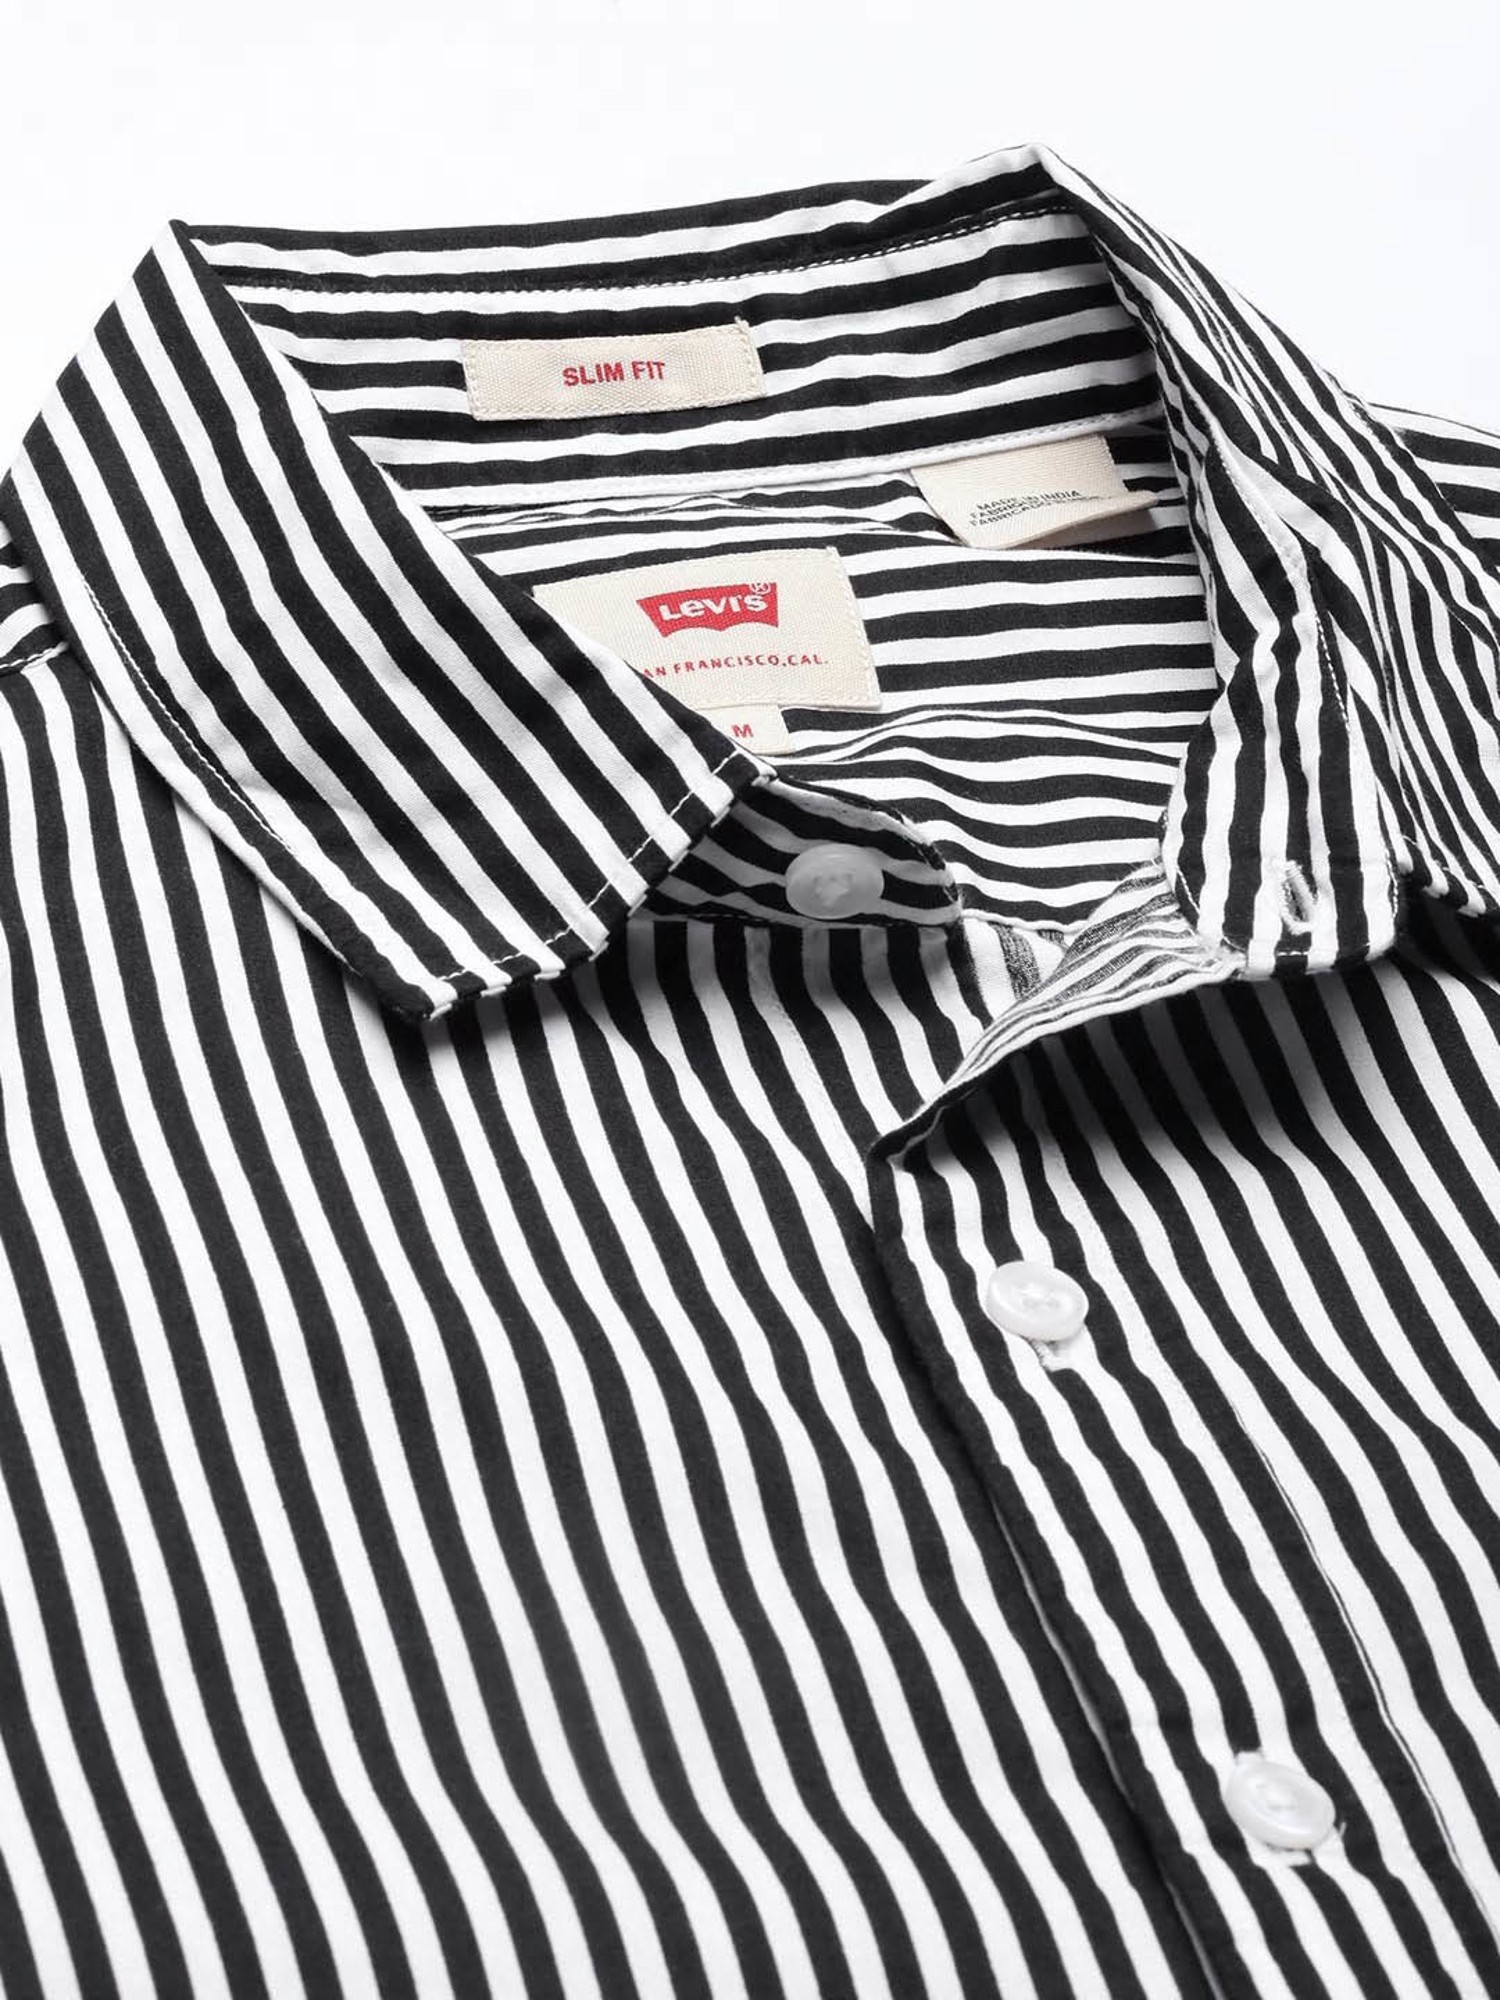 Buy Levi's Jet Black & White Striped Shirt for Men Online @ Tata CLiQ